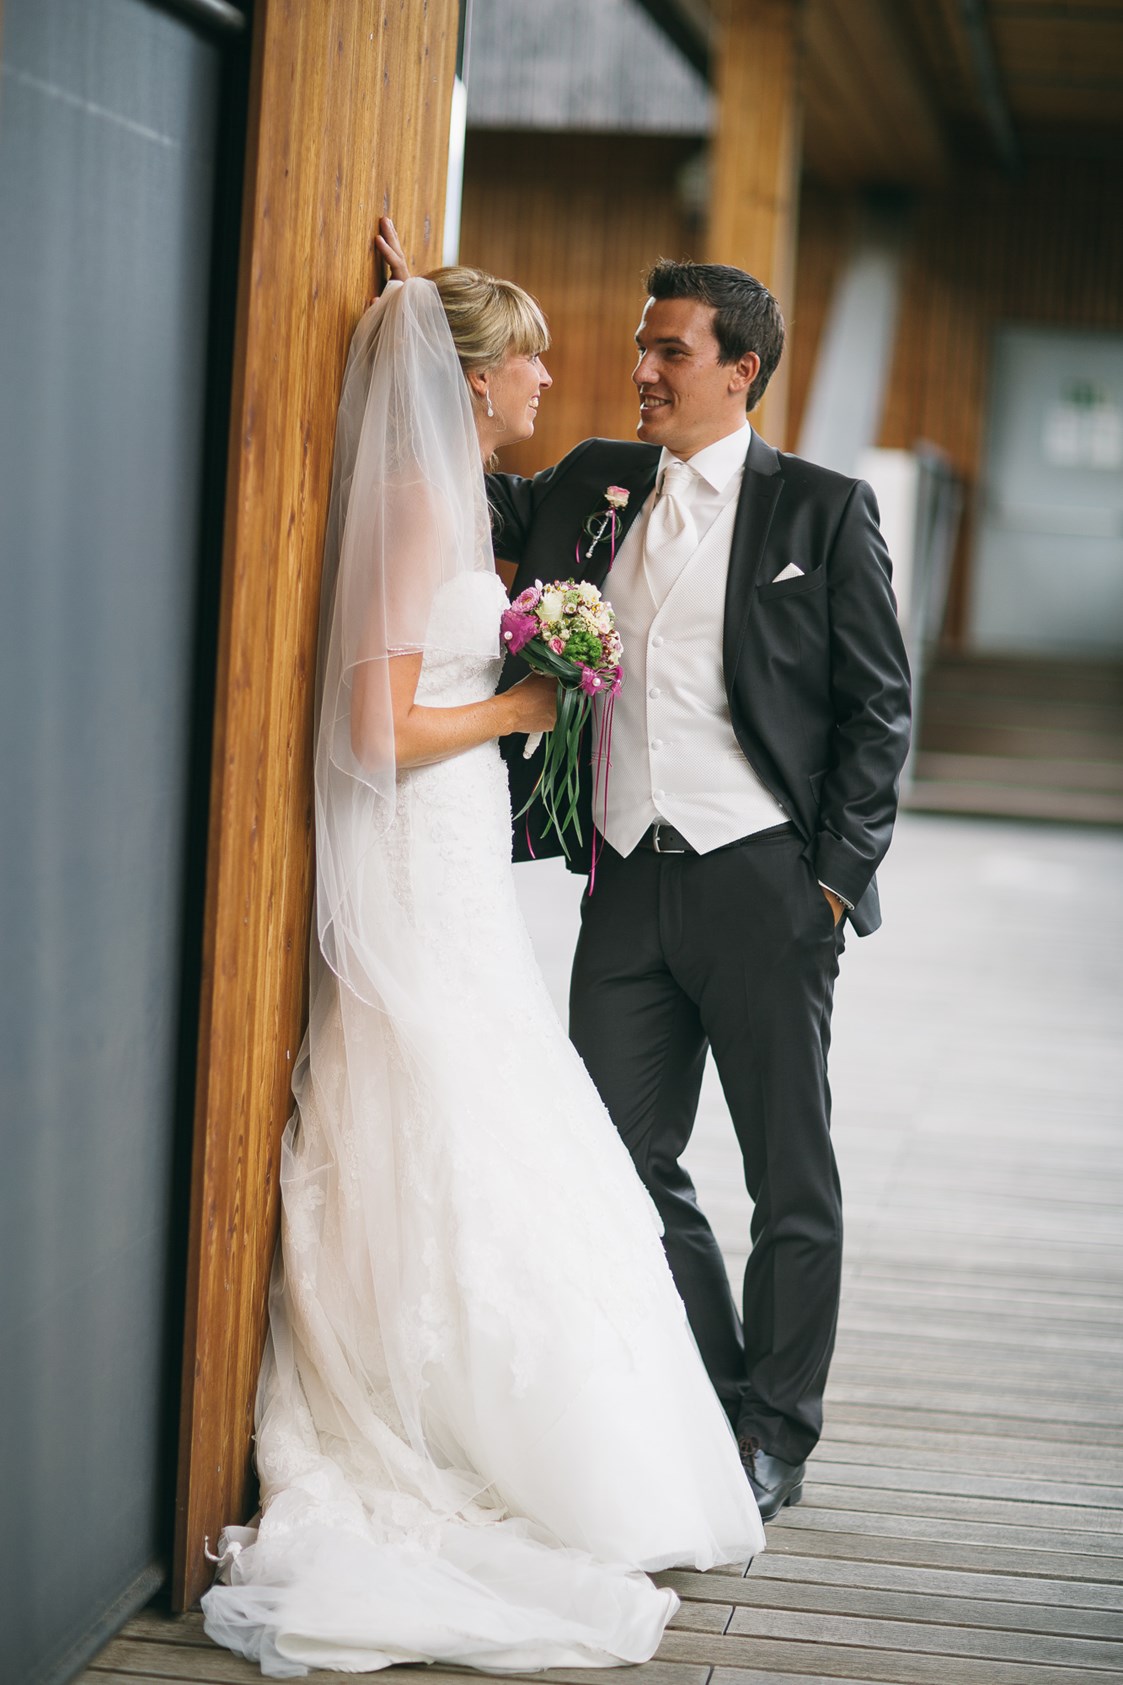 Hochzeitslocation: Heiraten in der SichtBAR in Tirol.
Foto © formaphoto.net - FeuerWerk & SichtBAR